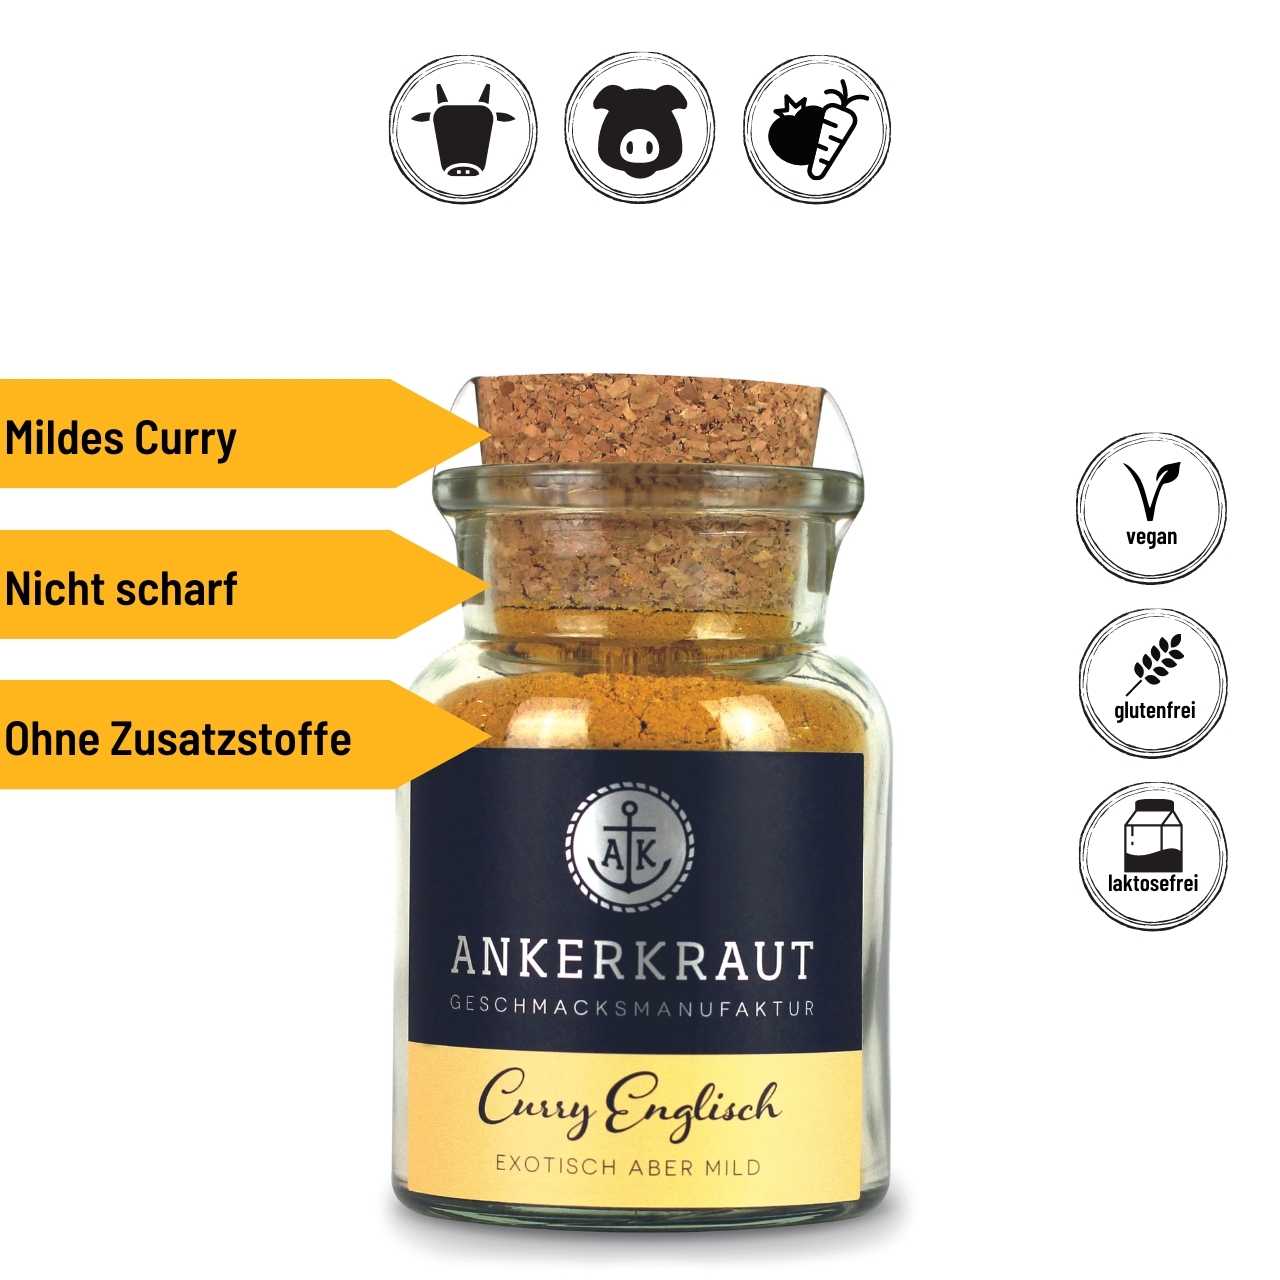 Ankerkraut Curry Englisch, 70 g Korkenglas